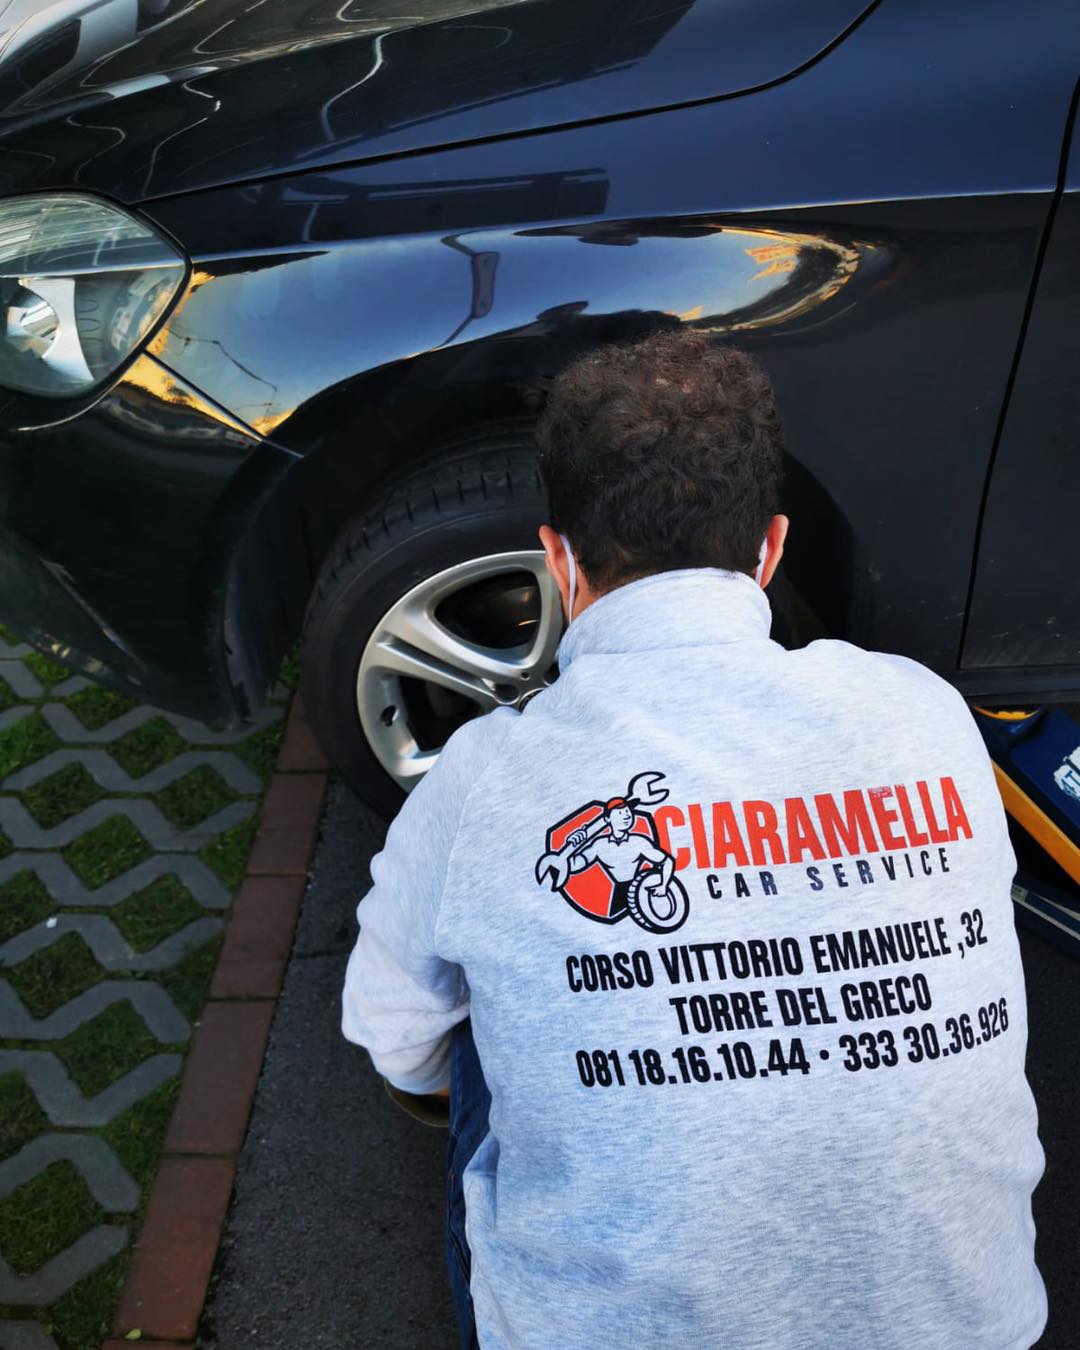 Ciaramella Car Service, non solo Bridgestone e Michelin